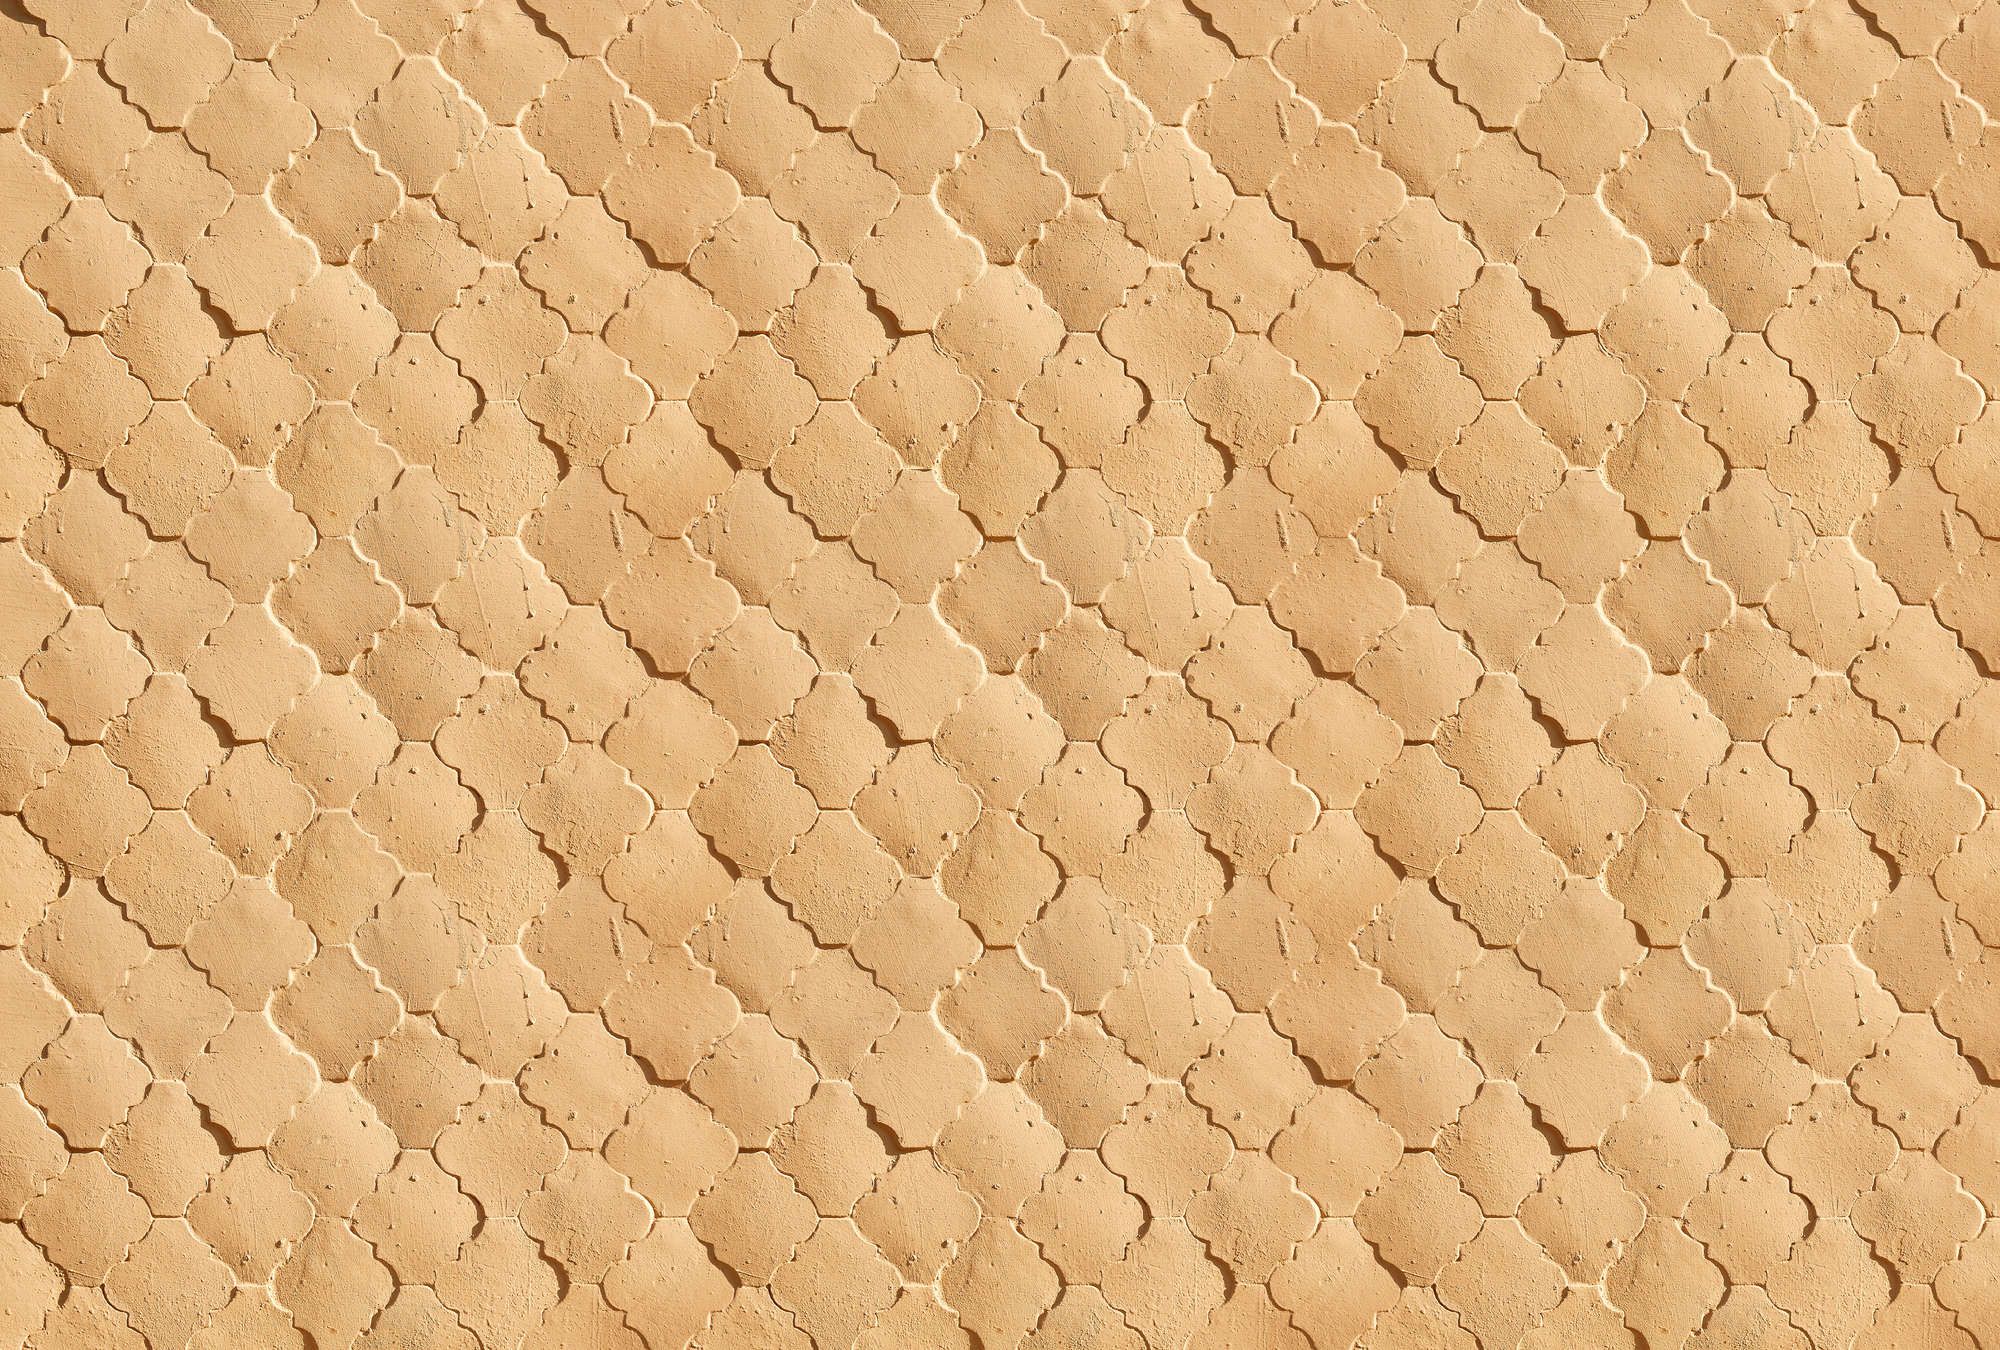             Fotomurali »siena« - Motivo a piastrelle mediterranee nei colori della sabbia - Materiali non tessuto premium liscio e leggermente lucido
        